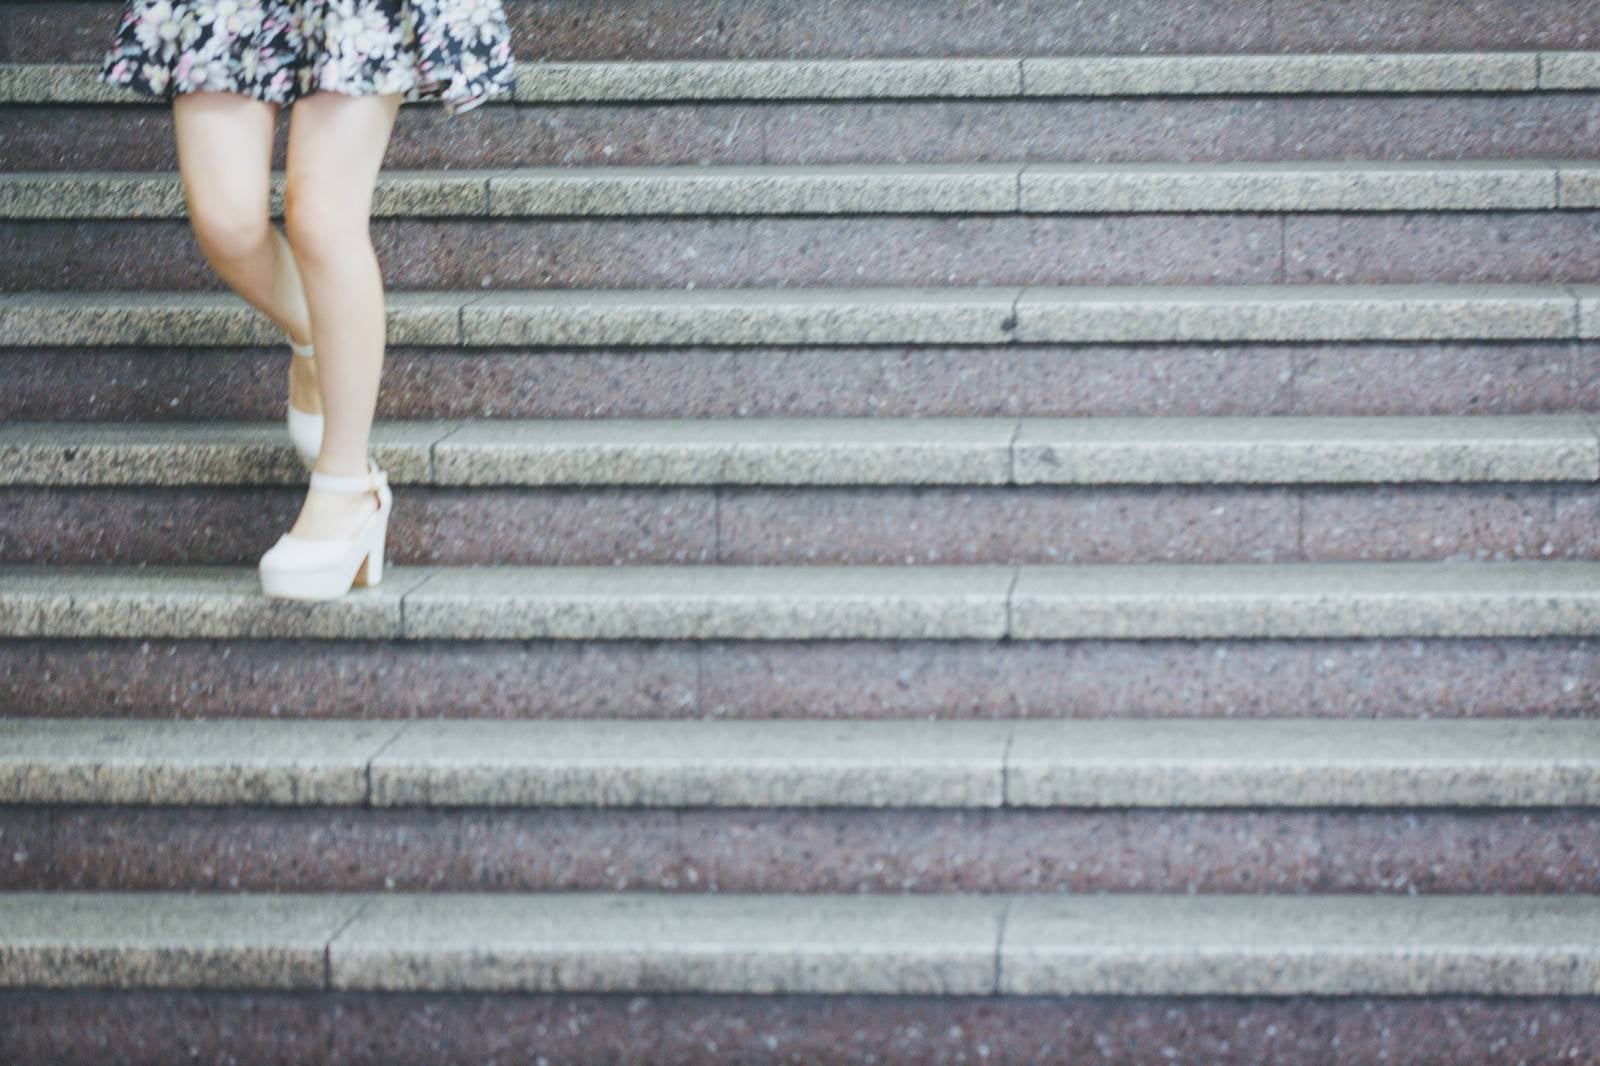 「階段と下る女性の足元」の写真